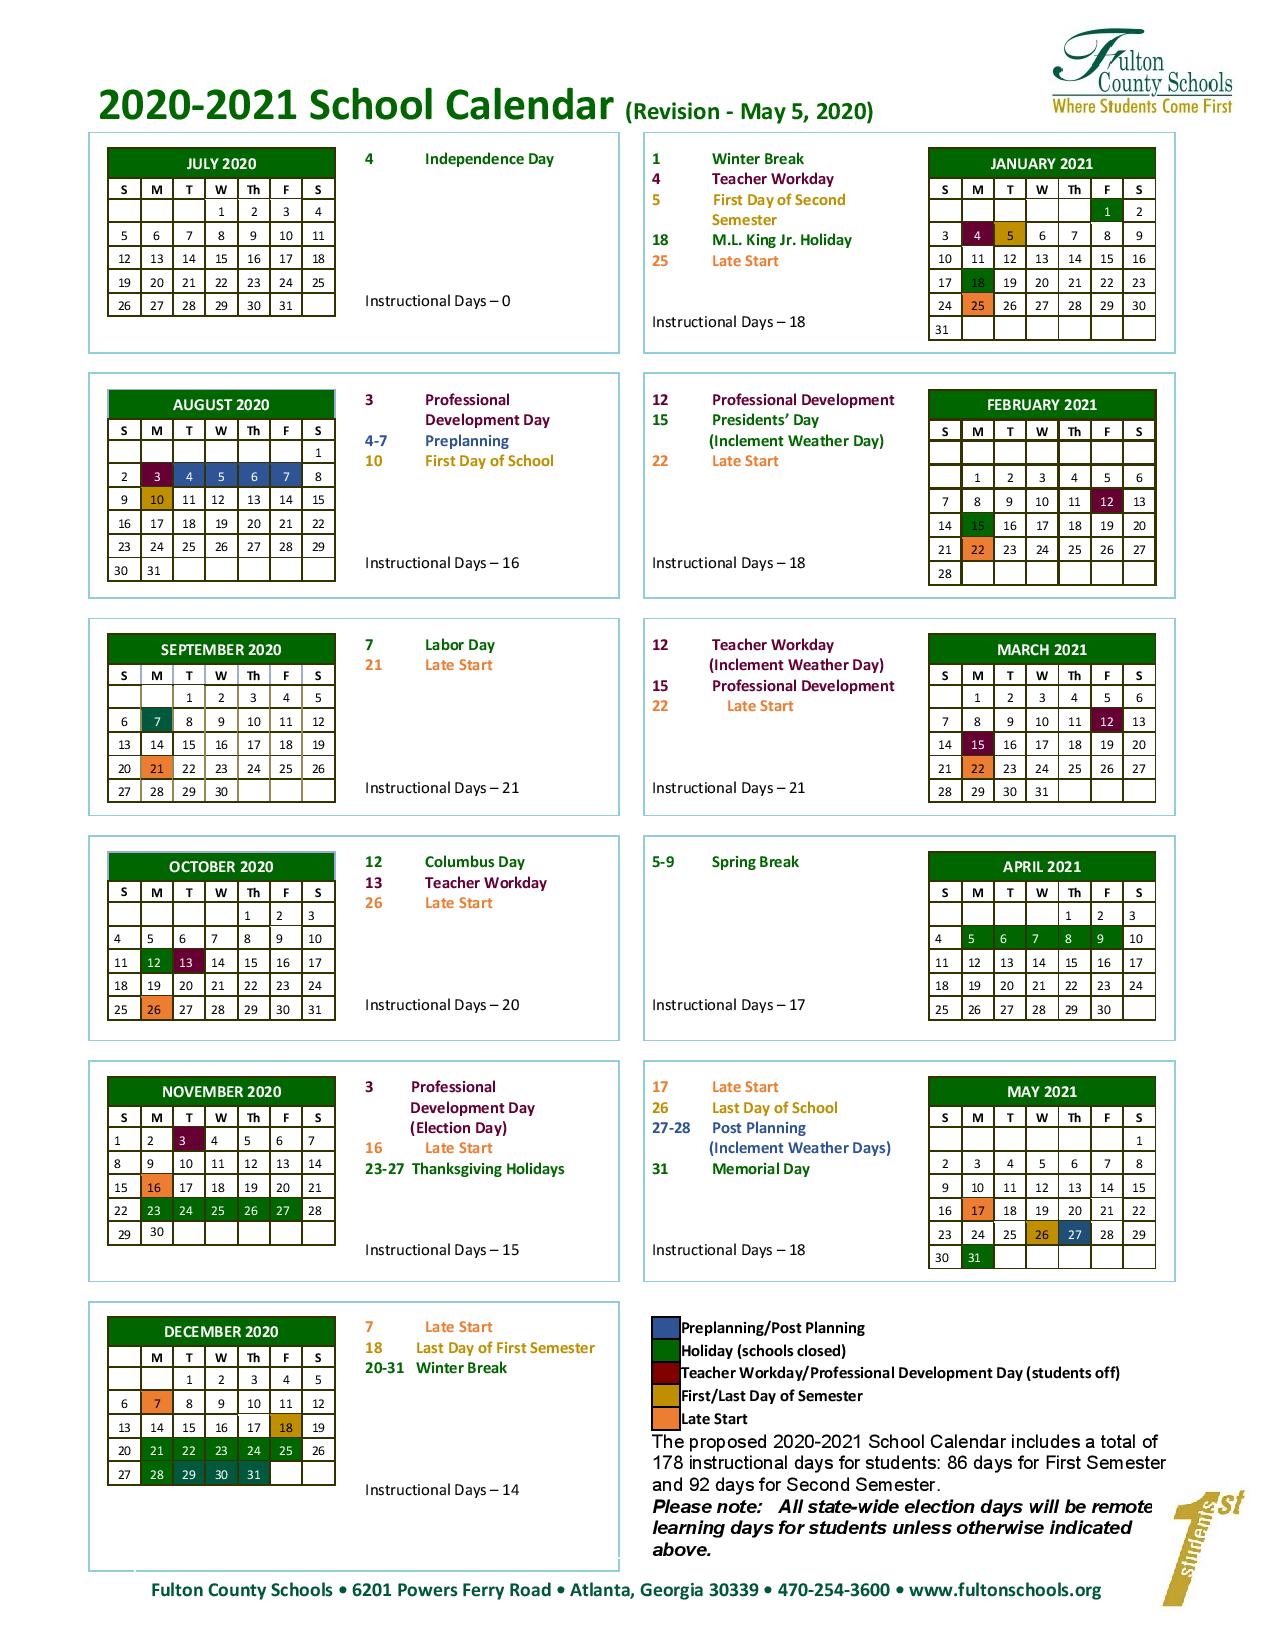 Fulton County School Calendar 2021 Fulton County Schools Calendar 2020 2021   Download Now